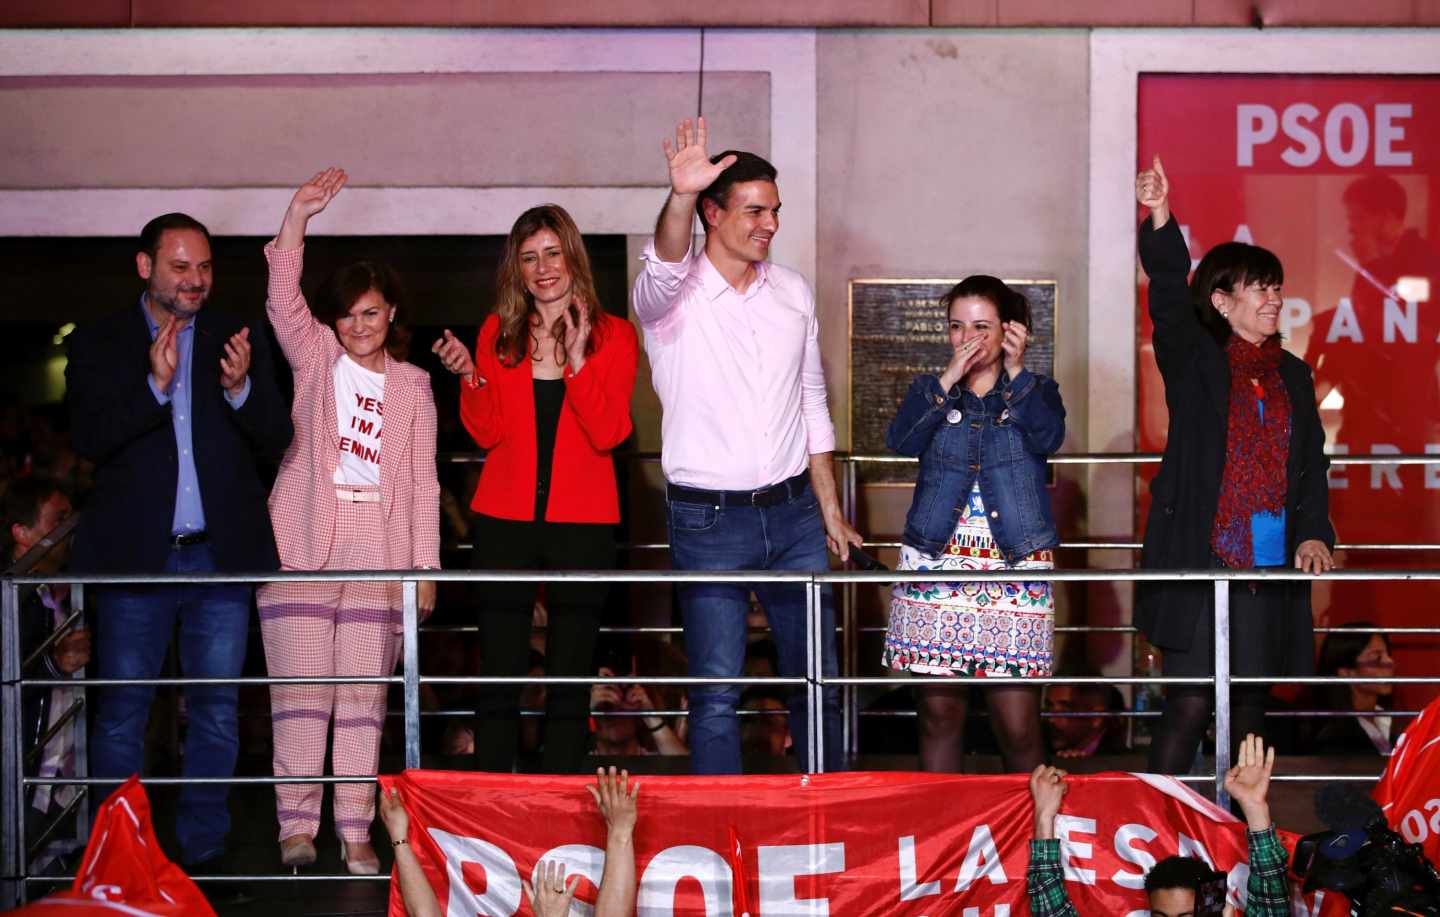 El PSOE no descarta gobernar en minoría y se da tiempo para posibles pactos